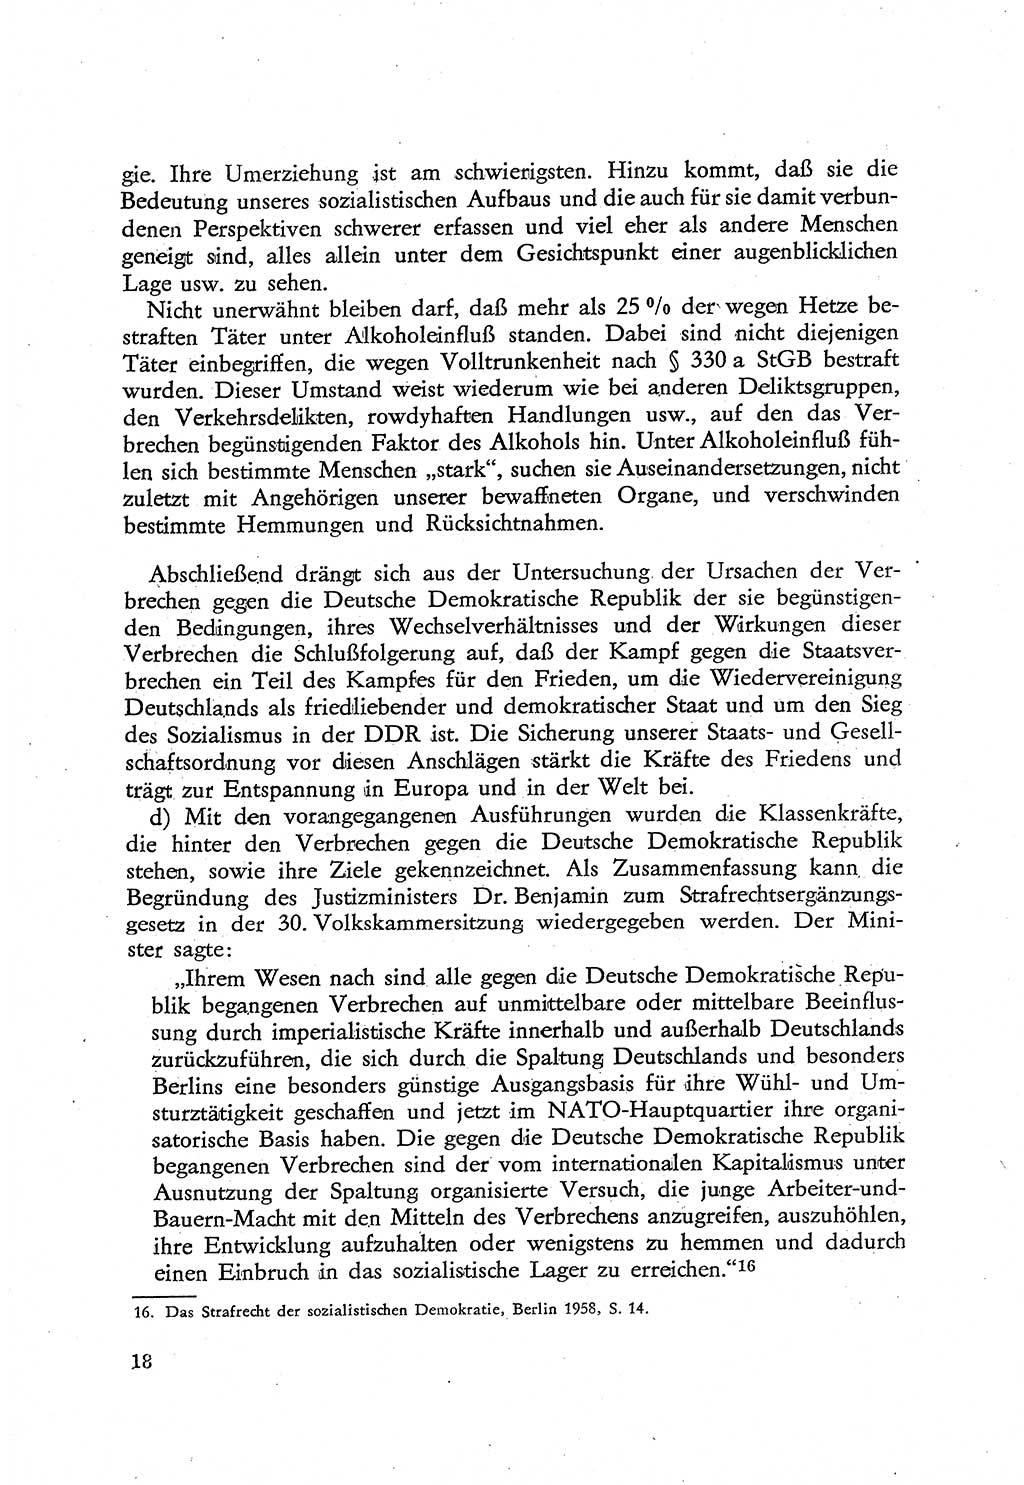 Beiträge zum Strafrecht [Deutsche Demokratische Republik (DDR)], Staatsverbrechen 1959, Seite 18 (Beitr. Strafr. DDR St.-Verbr. 1959, S. 18)